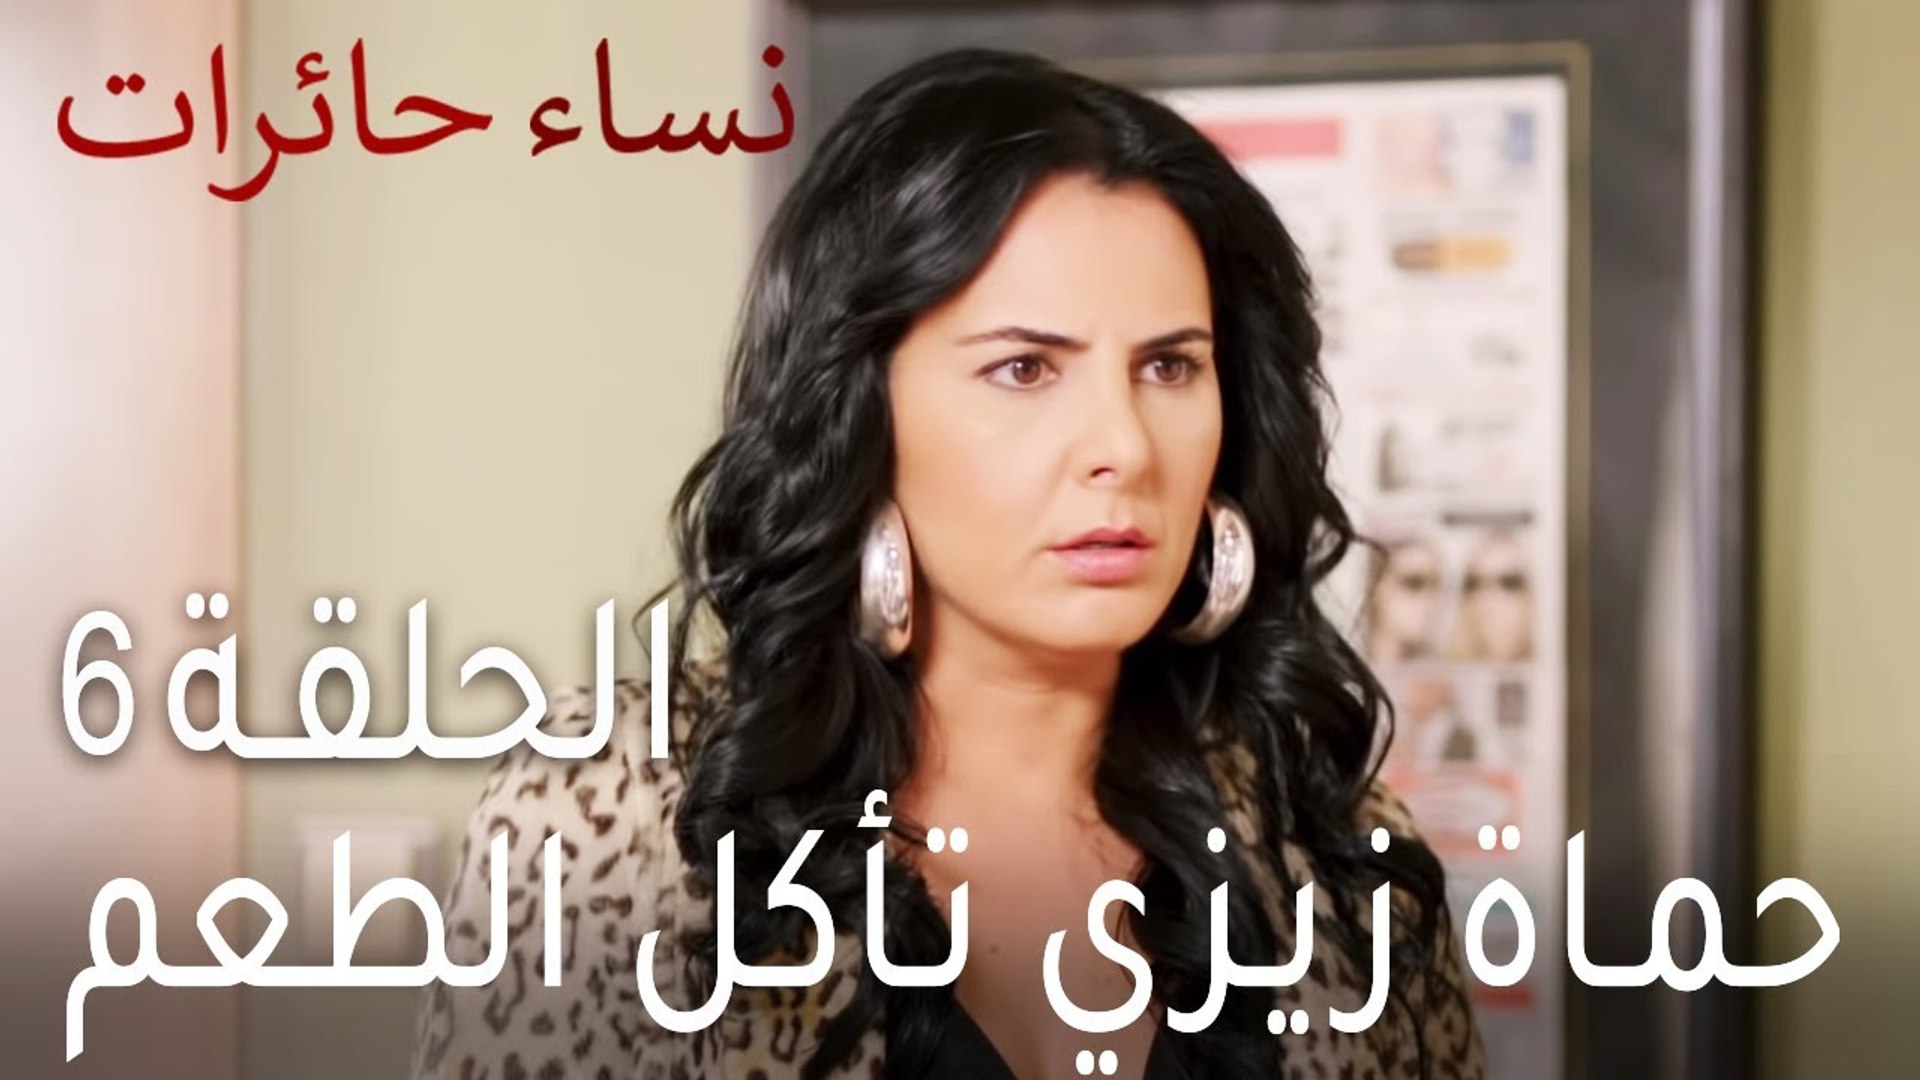 نساء حائرات الحلقة 6 - حماة زيزي تأكل الطعم - فيديو Dailymotion